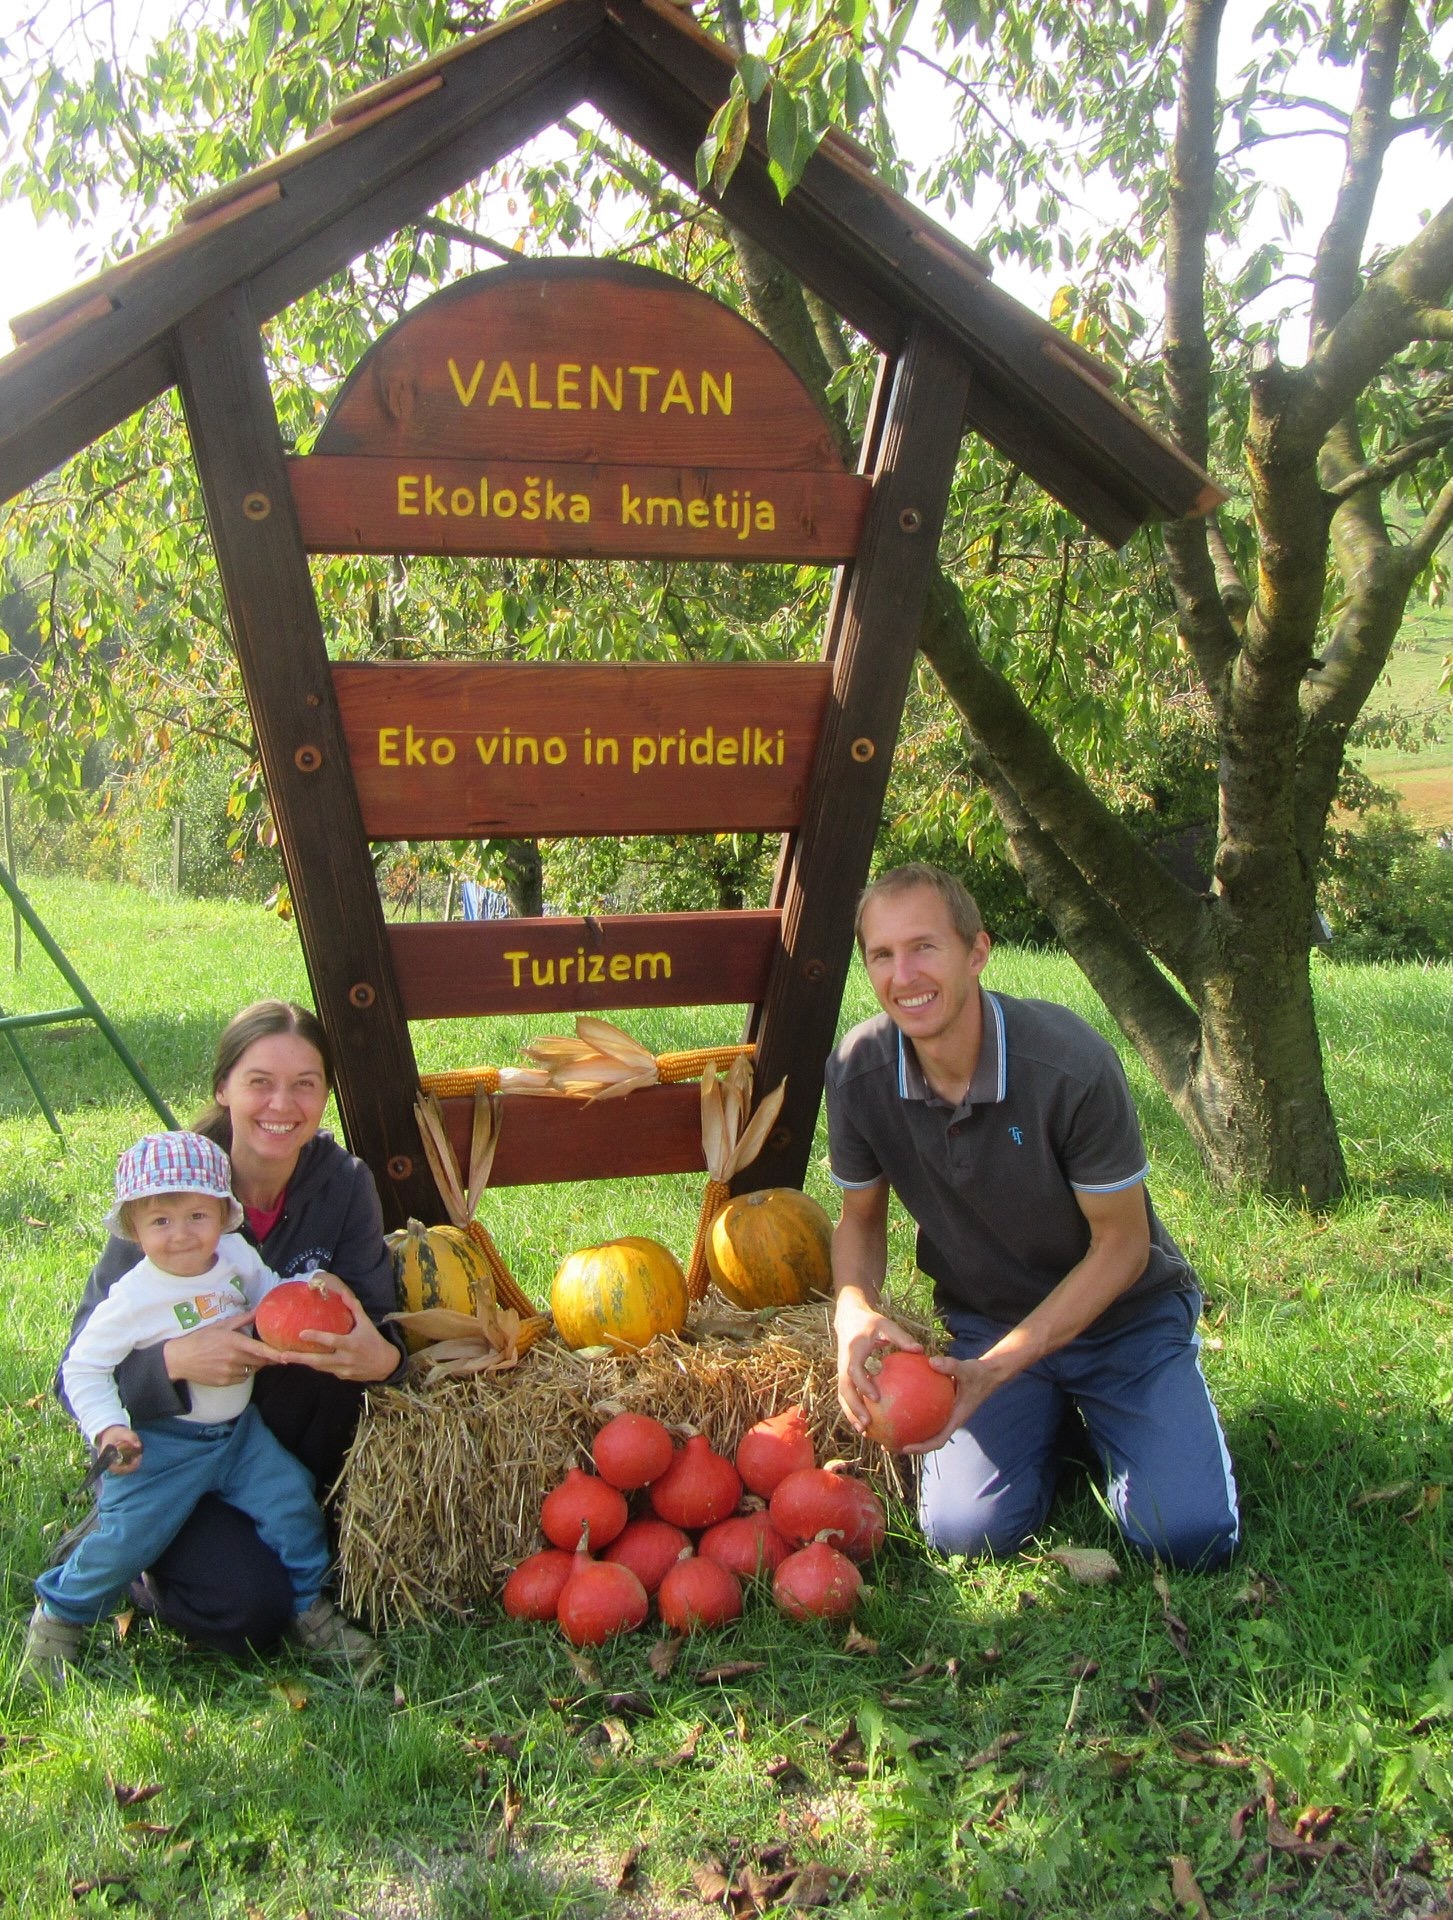 Pumkpin harvest at Valentan